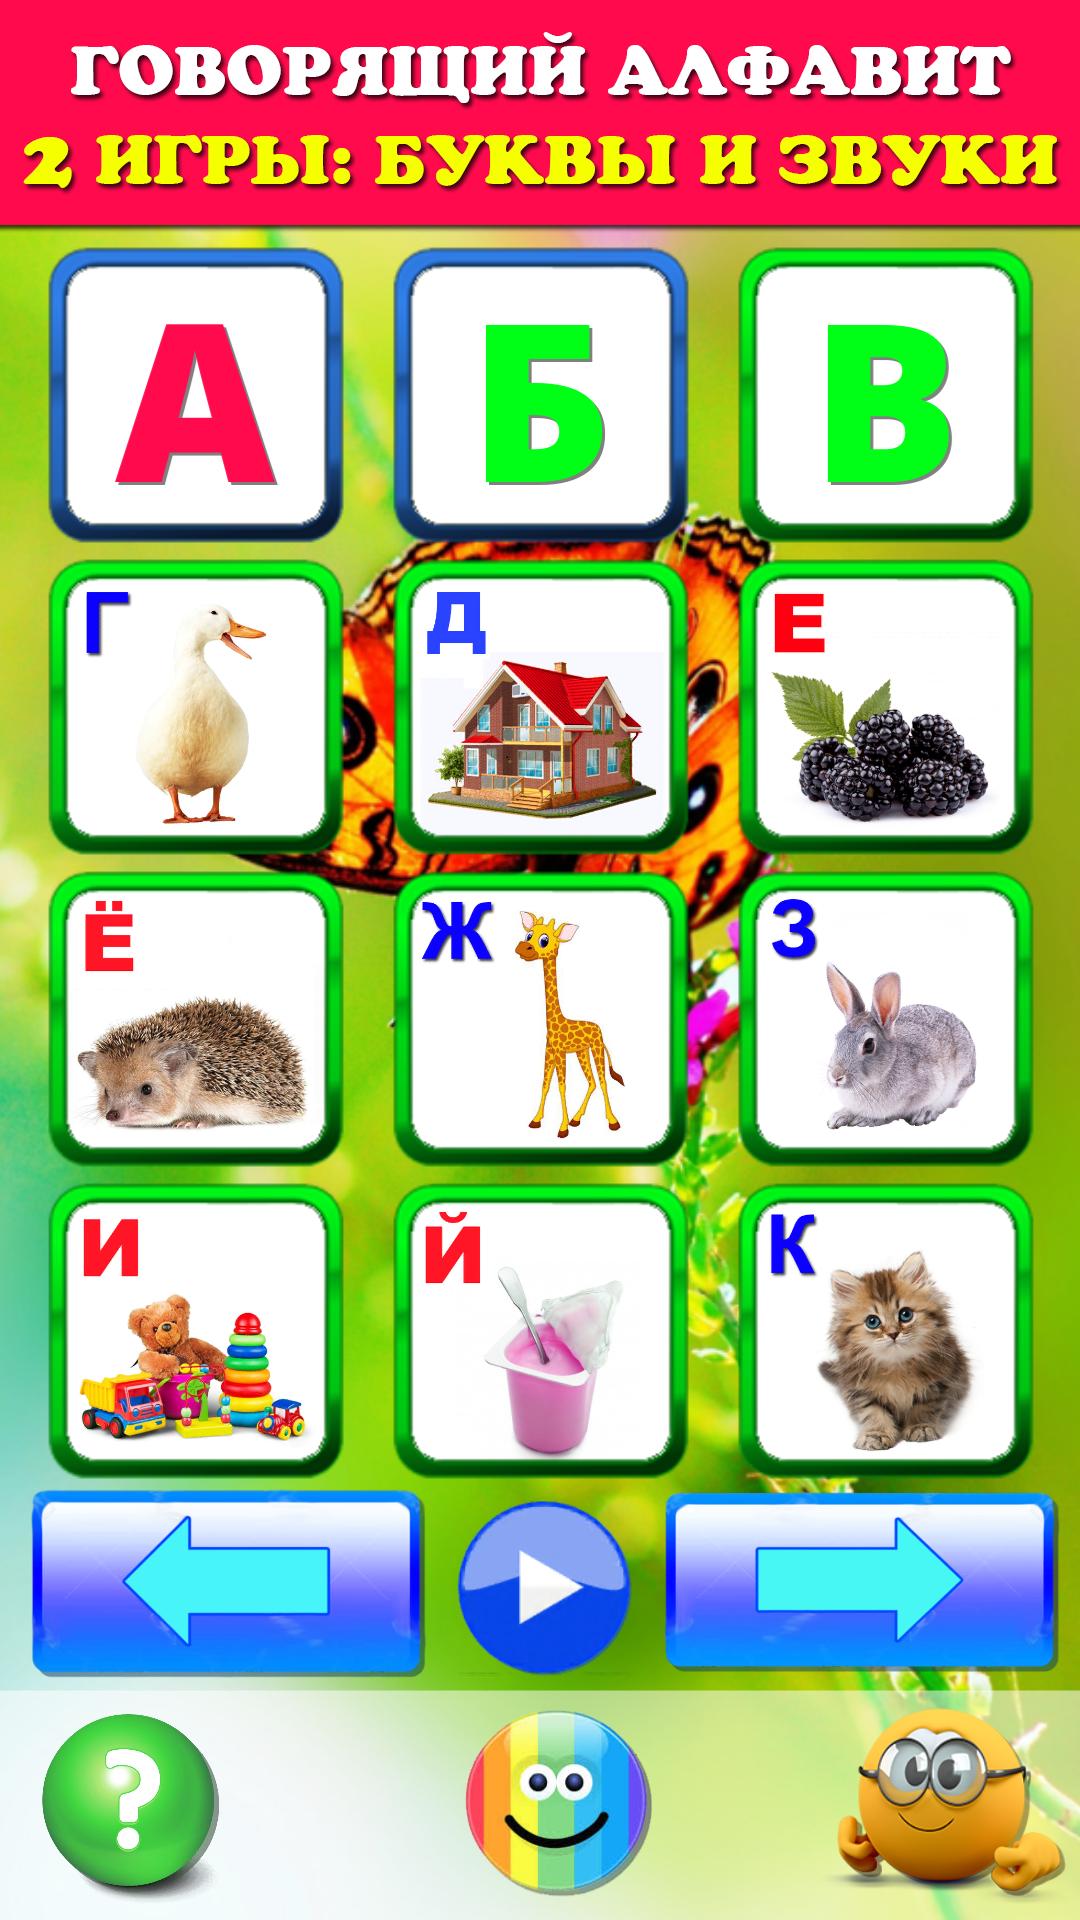 Говорящая азбука алфавит для детей. Учим буквы 2.1 Screenshot 9